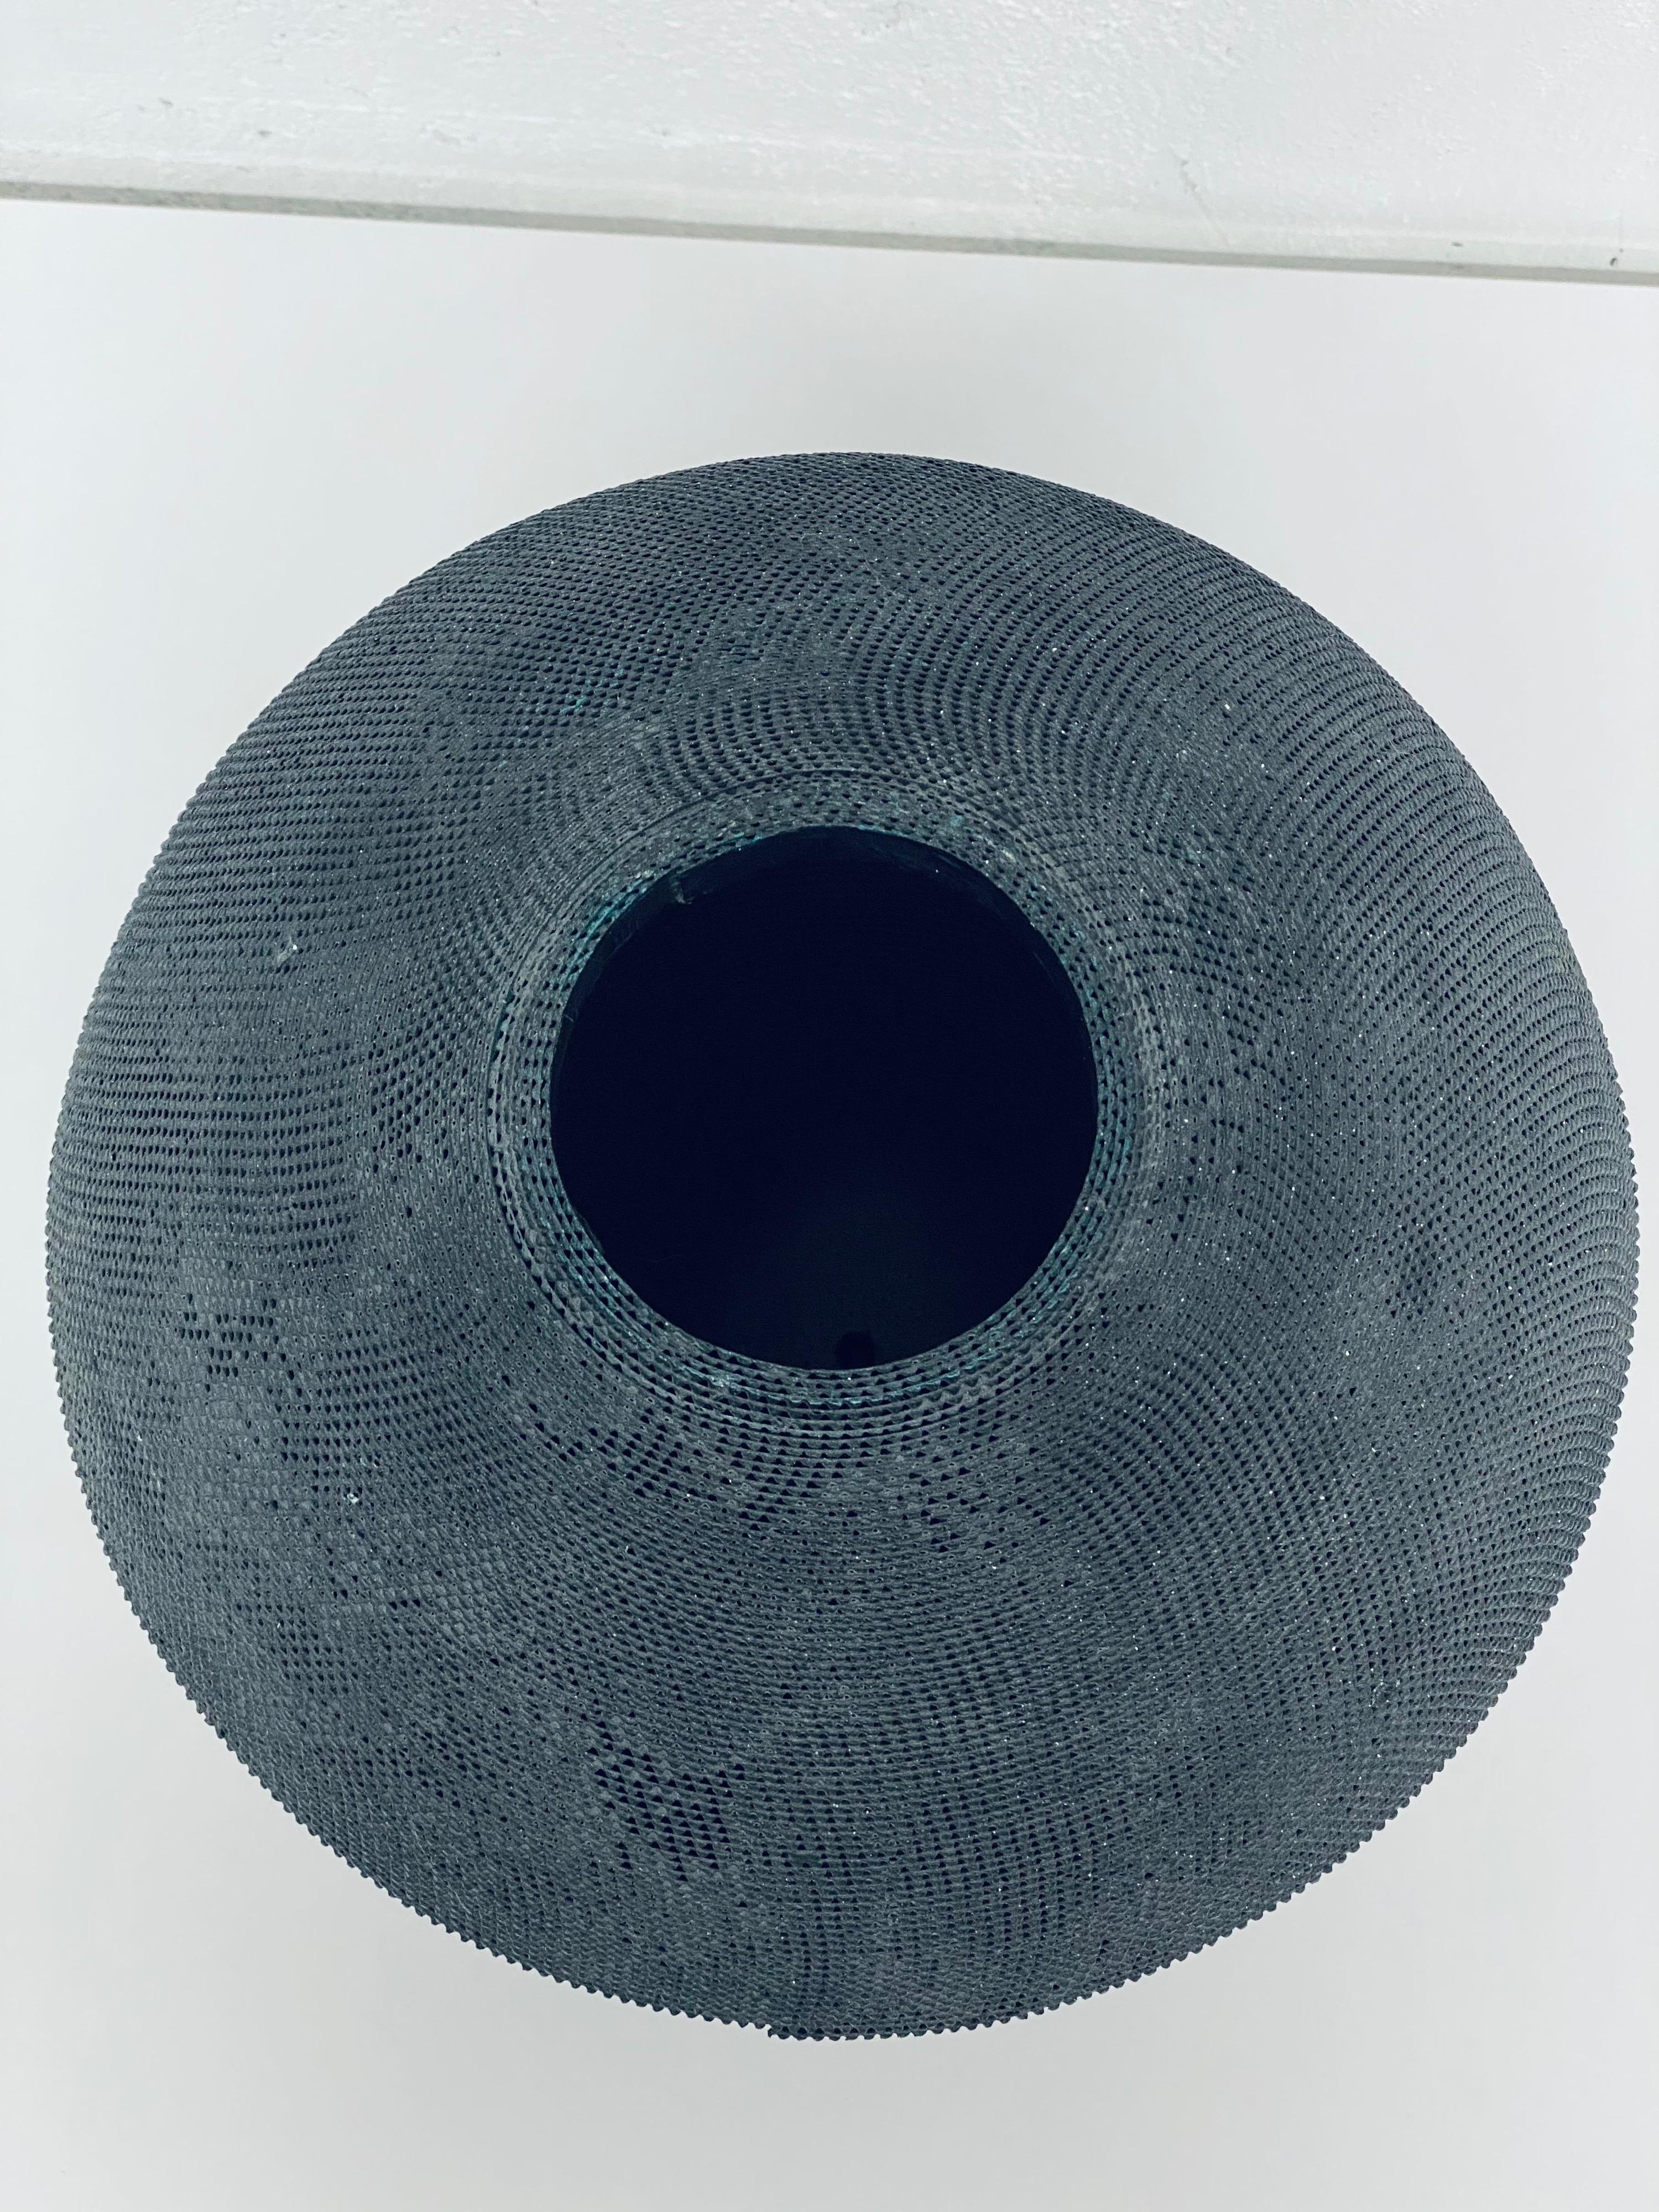 Natural Fiber Postmodern Black Corrugated Cardboard Vase by Flute, Chicago For Sale